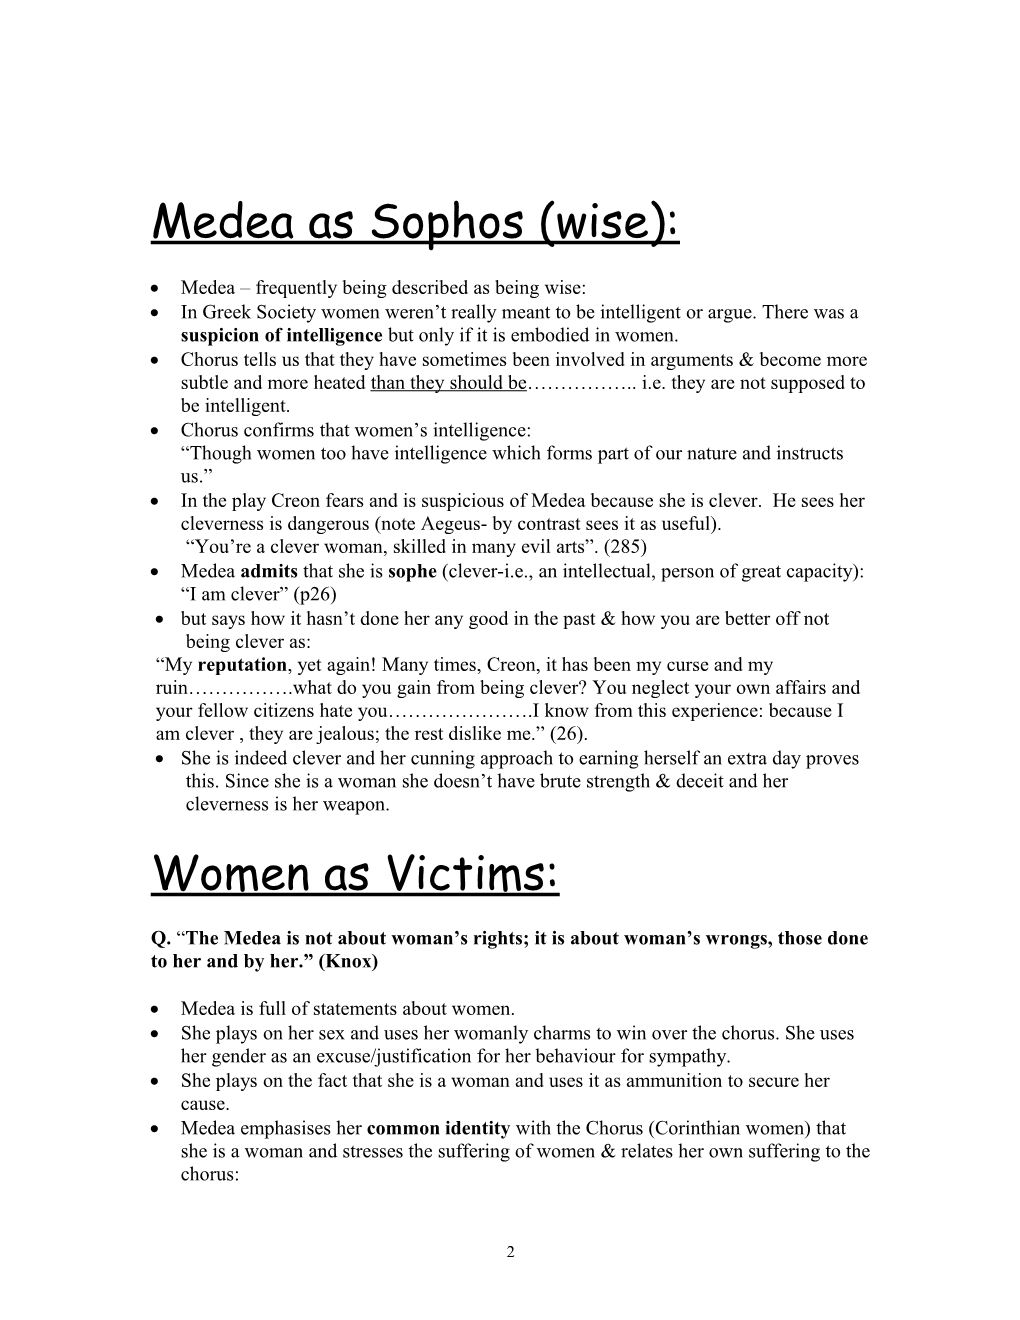 Medea As a Woman